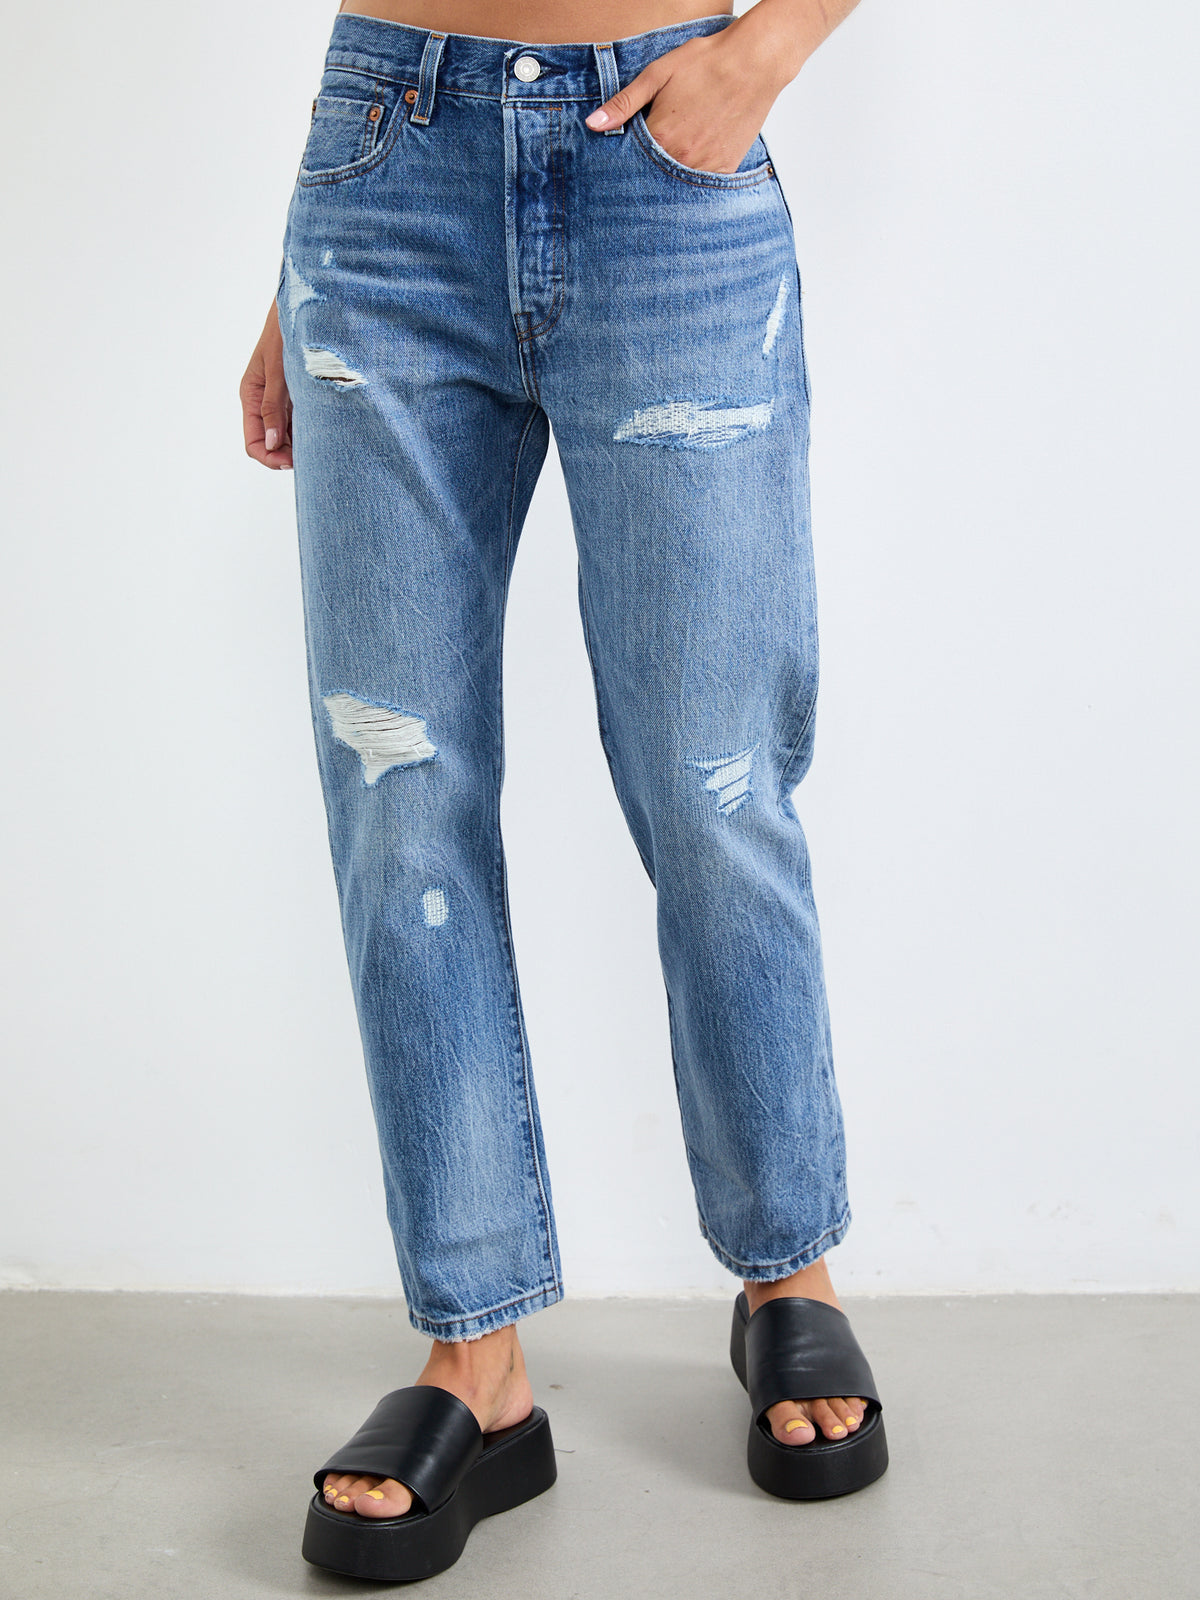 ג'ינס 501 בעיצוב משופשף